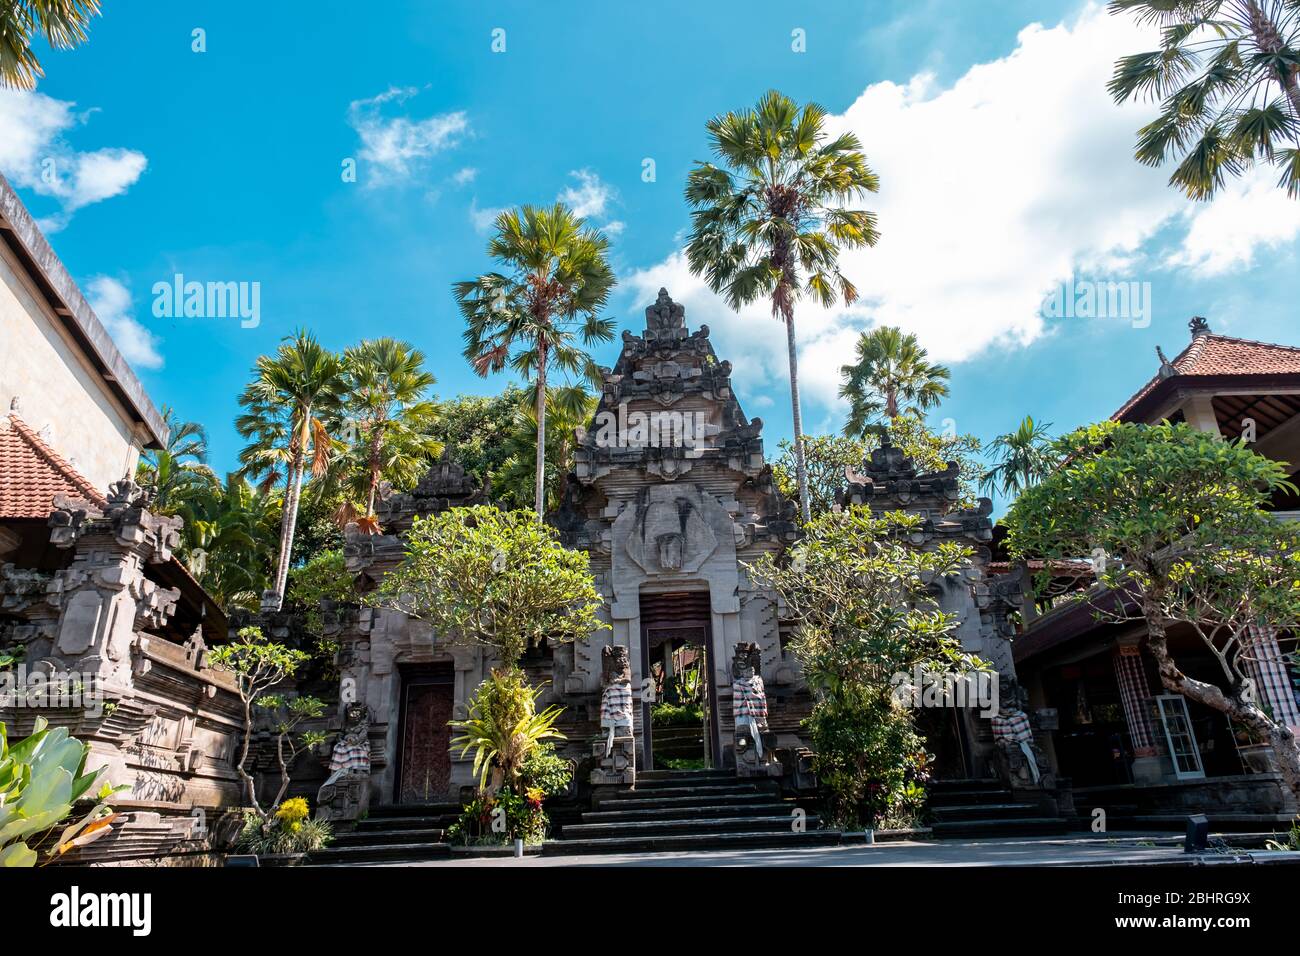 Nombre local de este lugar 'Museo Puri Lukisan' Puri Lukisan está en el centro de la provincia de Ubud, Isla de Bali Foto de stock